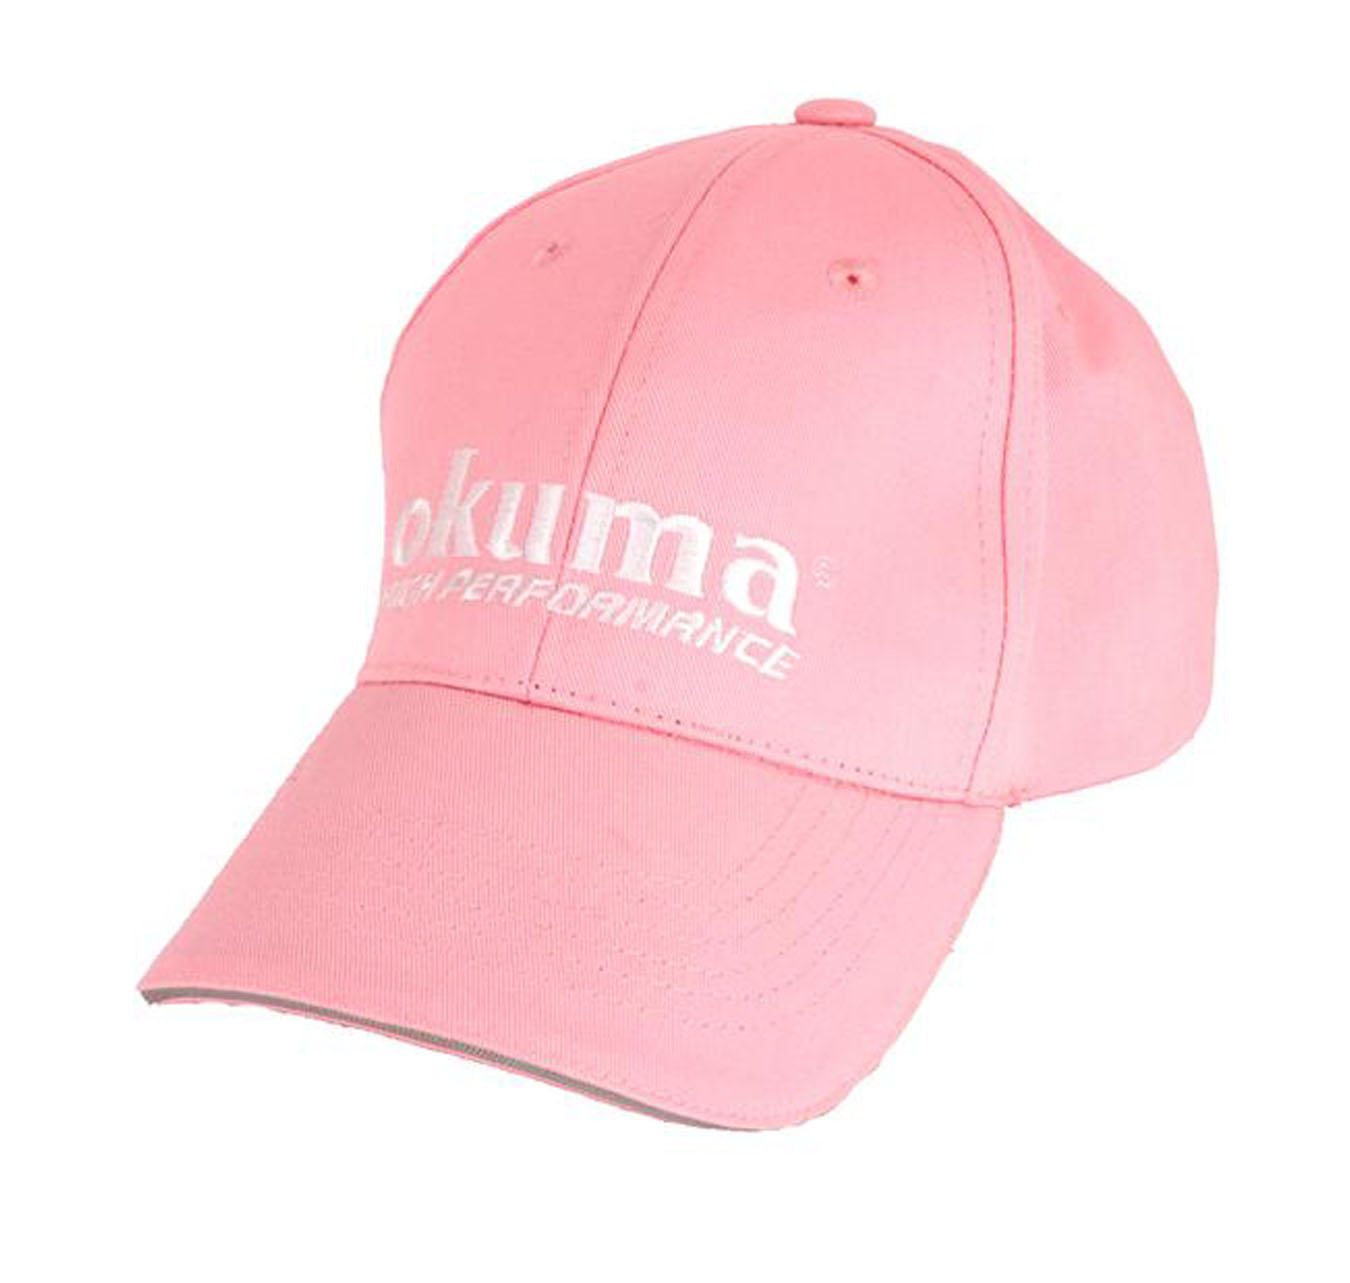 Okuma Pink High Performance Cap